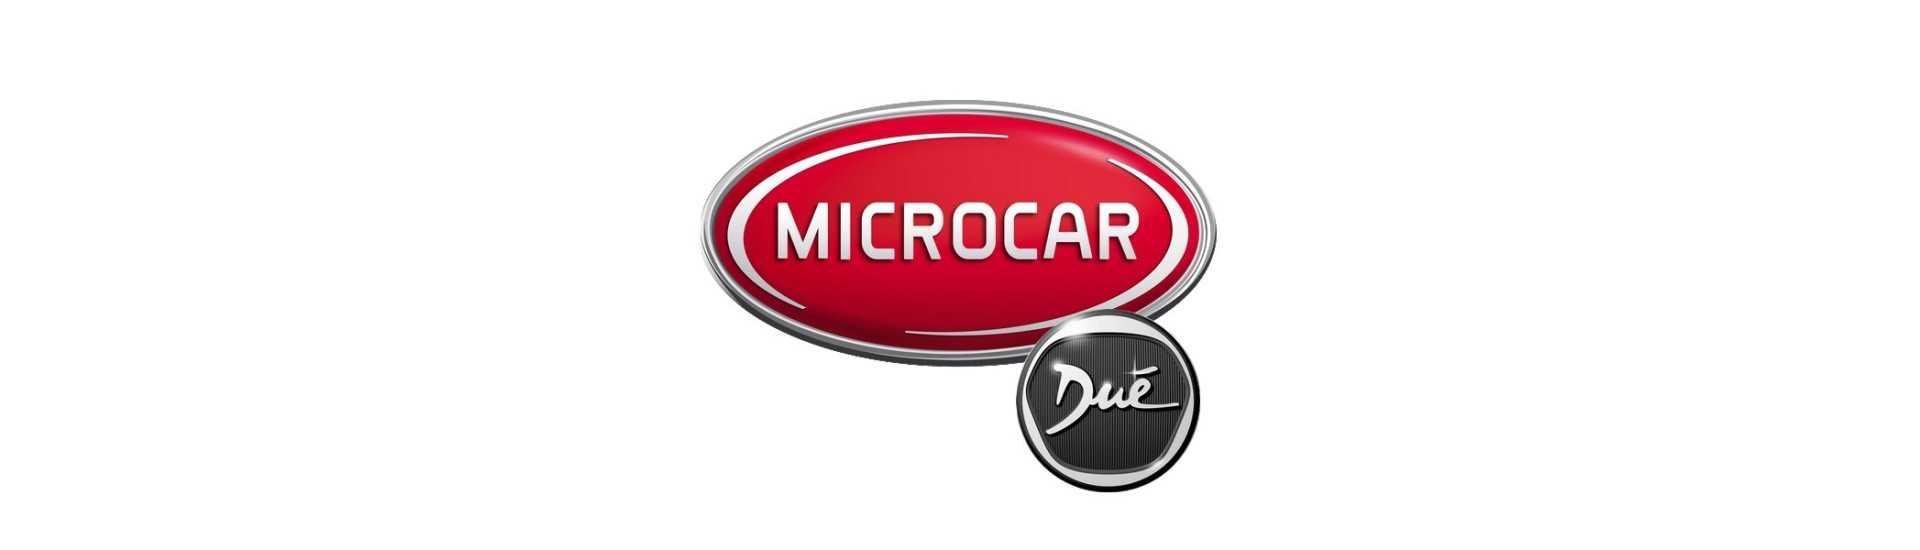 Support et fixation au meilleur prix voiture sans permis Microcar Dué